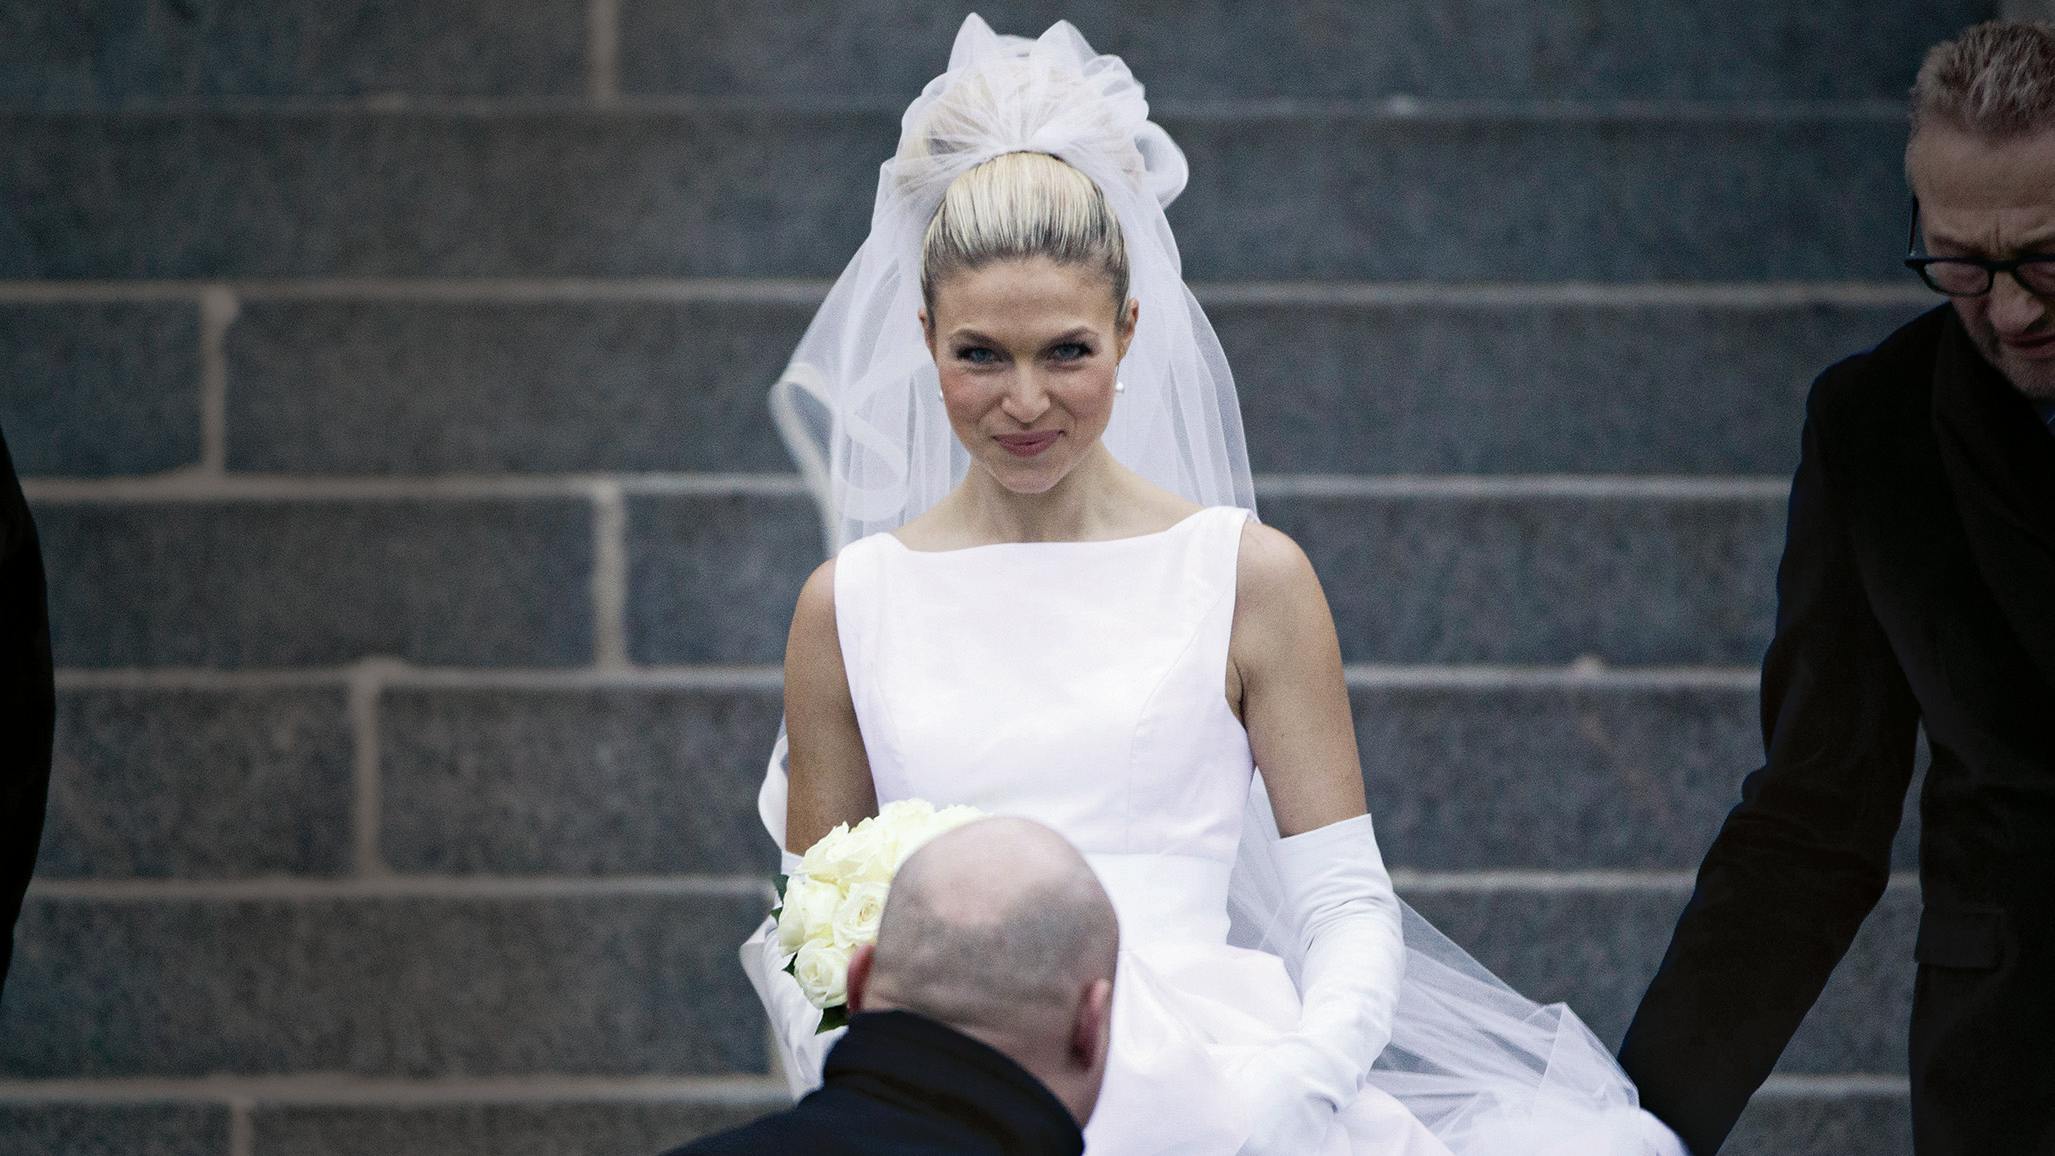 Det bliver anden gang, Christiane Schaumburg-Müller bliver gift. I 2012 sagde hun ja til Liam O'Connor ved et smukt julebryllup på Valdemars Slot i Tåsinge.
